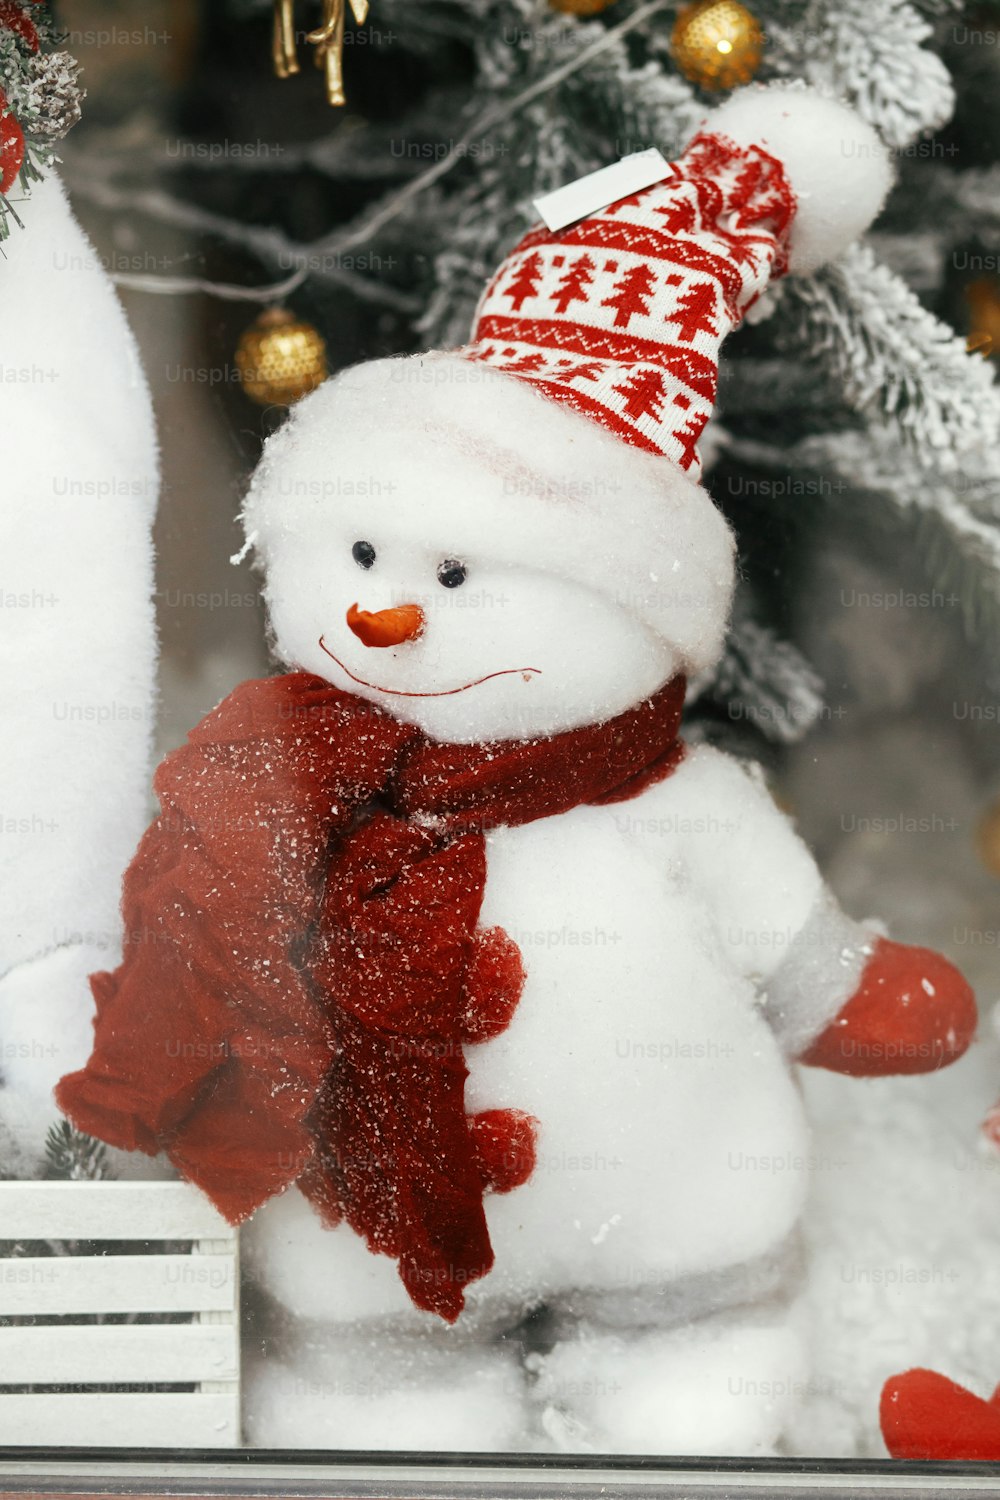 Bonhomme de neige mignon élégant en chapeau et avec écharpe jouet sous le sapin de Noël moderne. Décor festif de Noël pour les vacances d’hiver dans la rue de la ville européenne. Joyeux Noël!